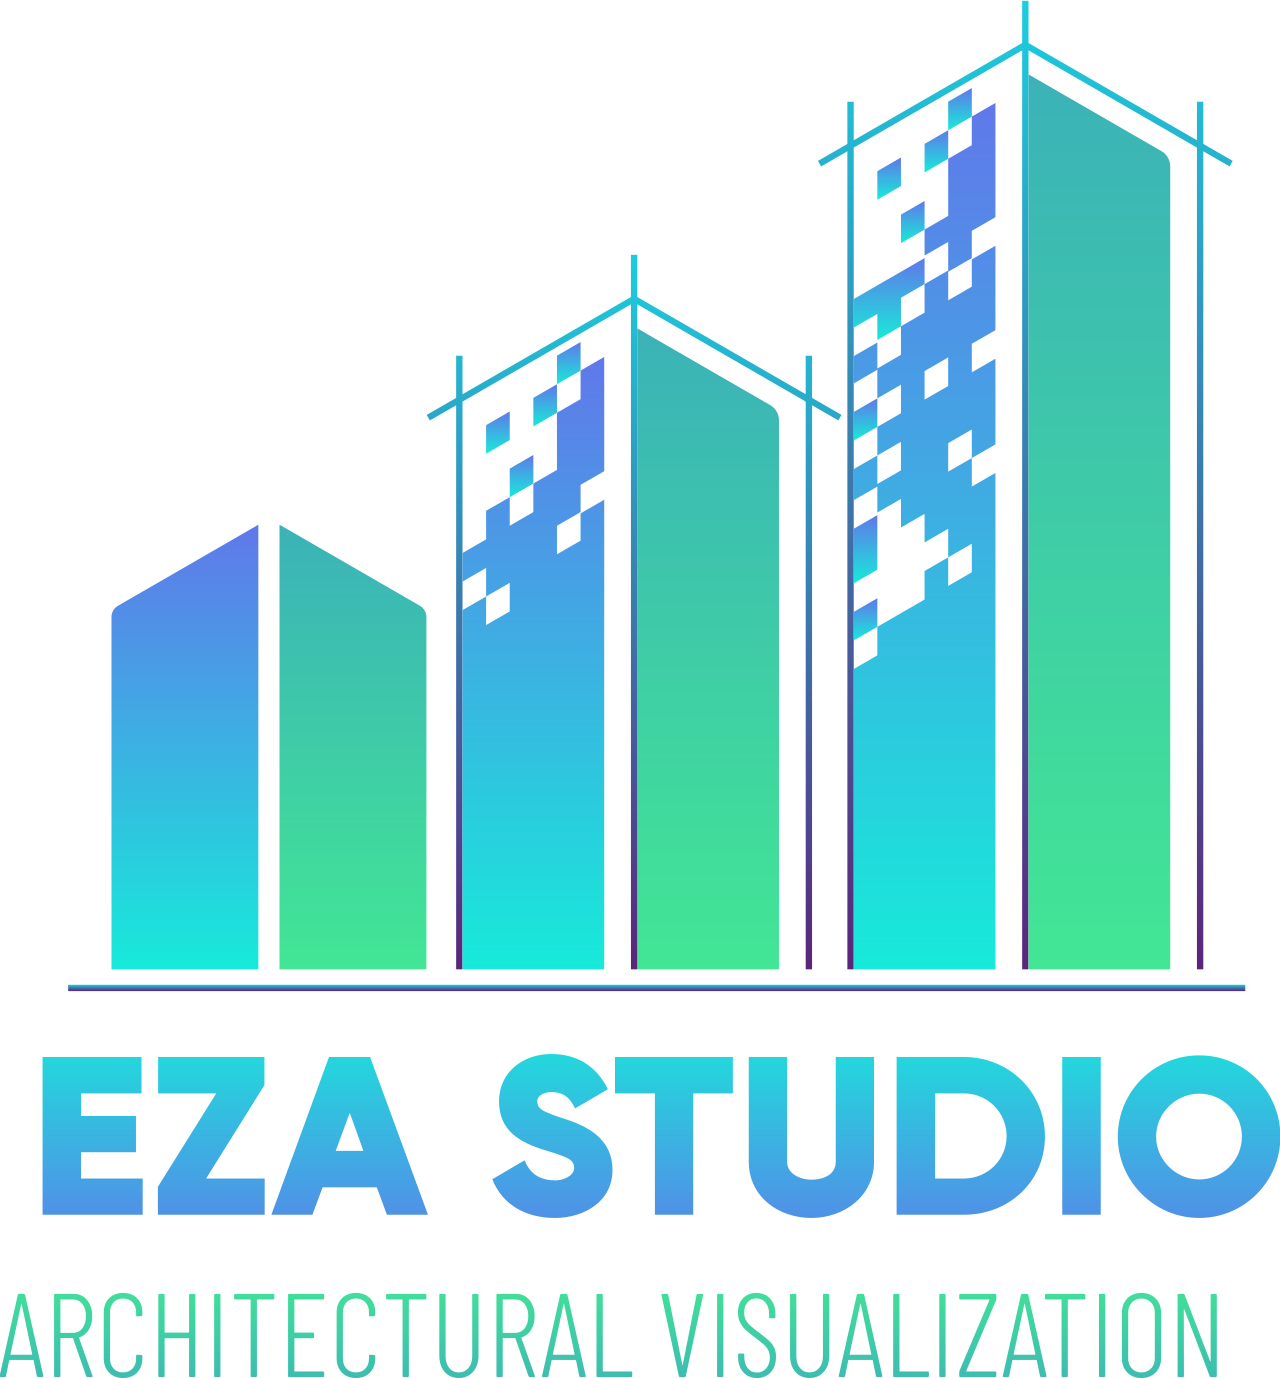 EZA STUDIO's web page